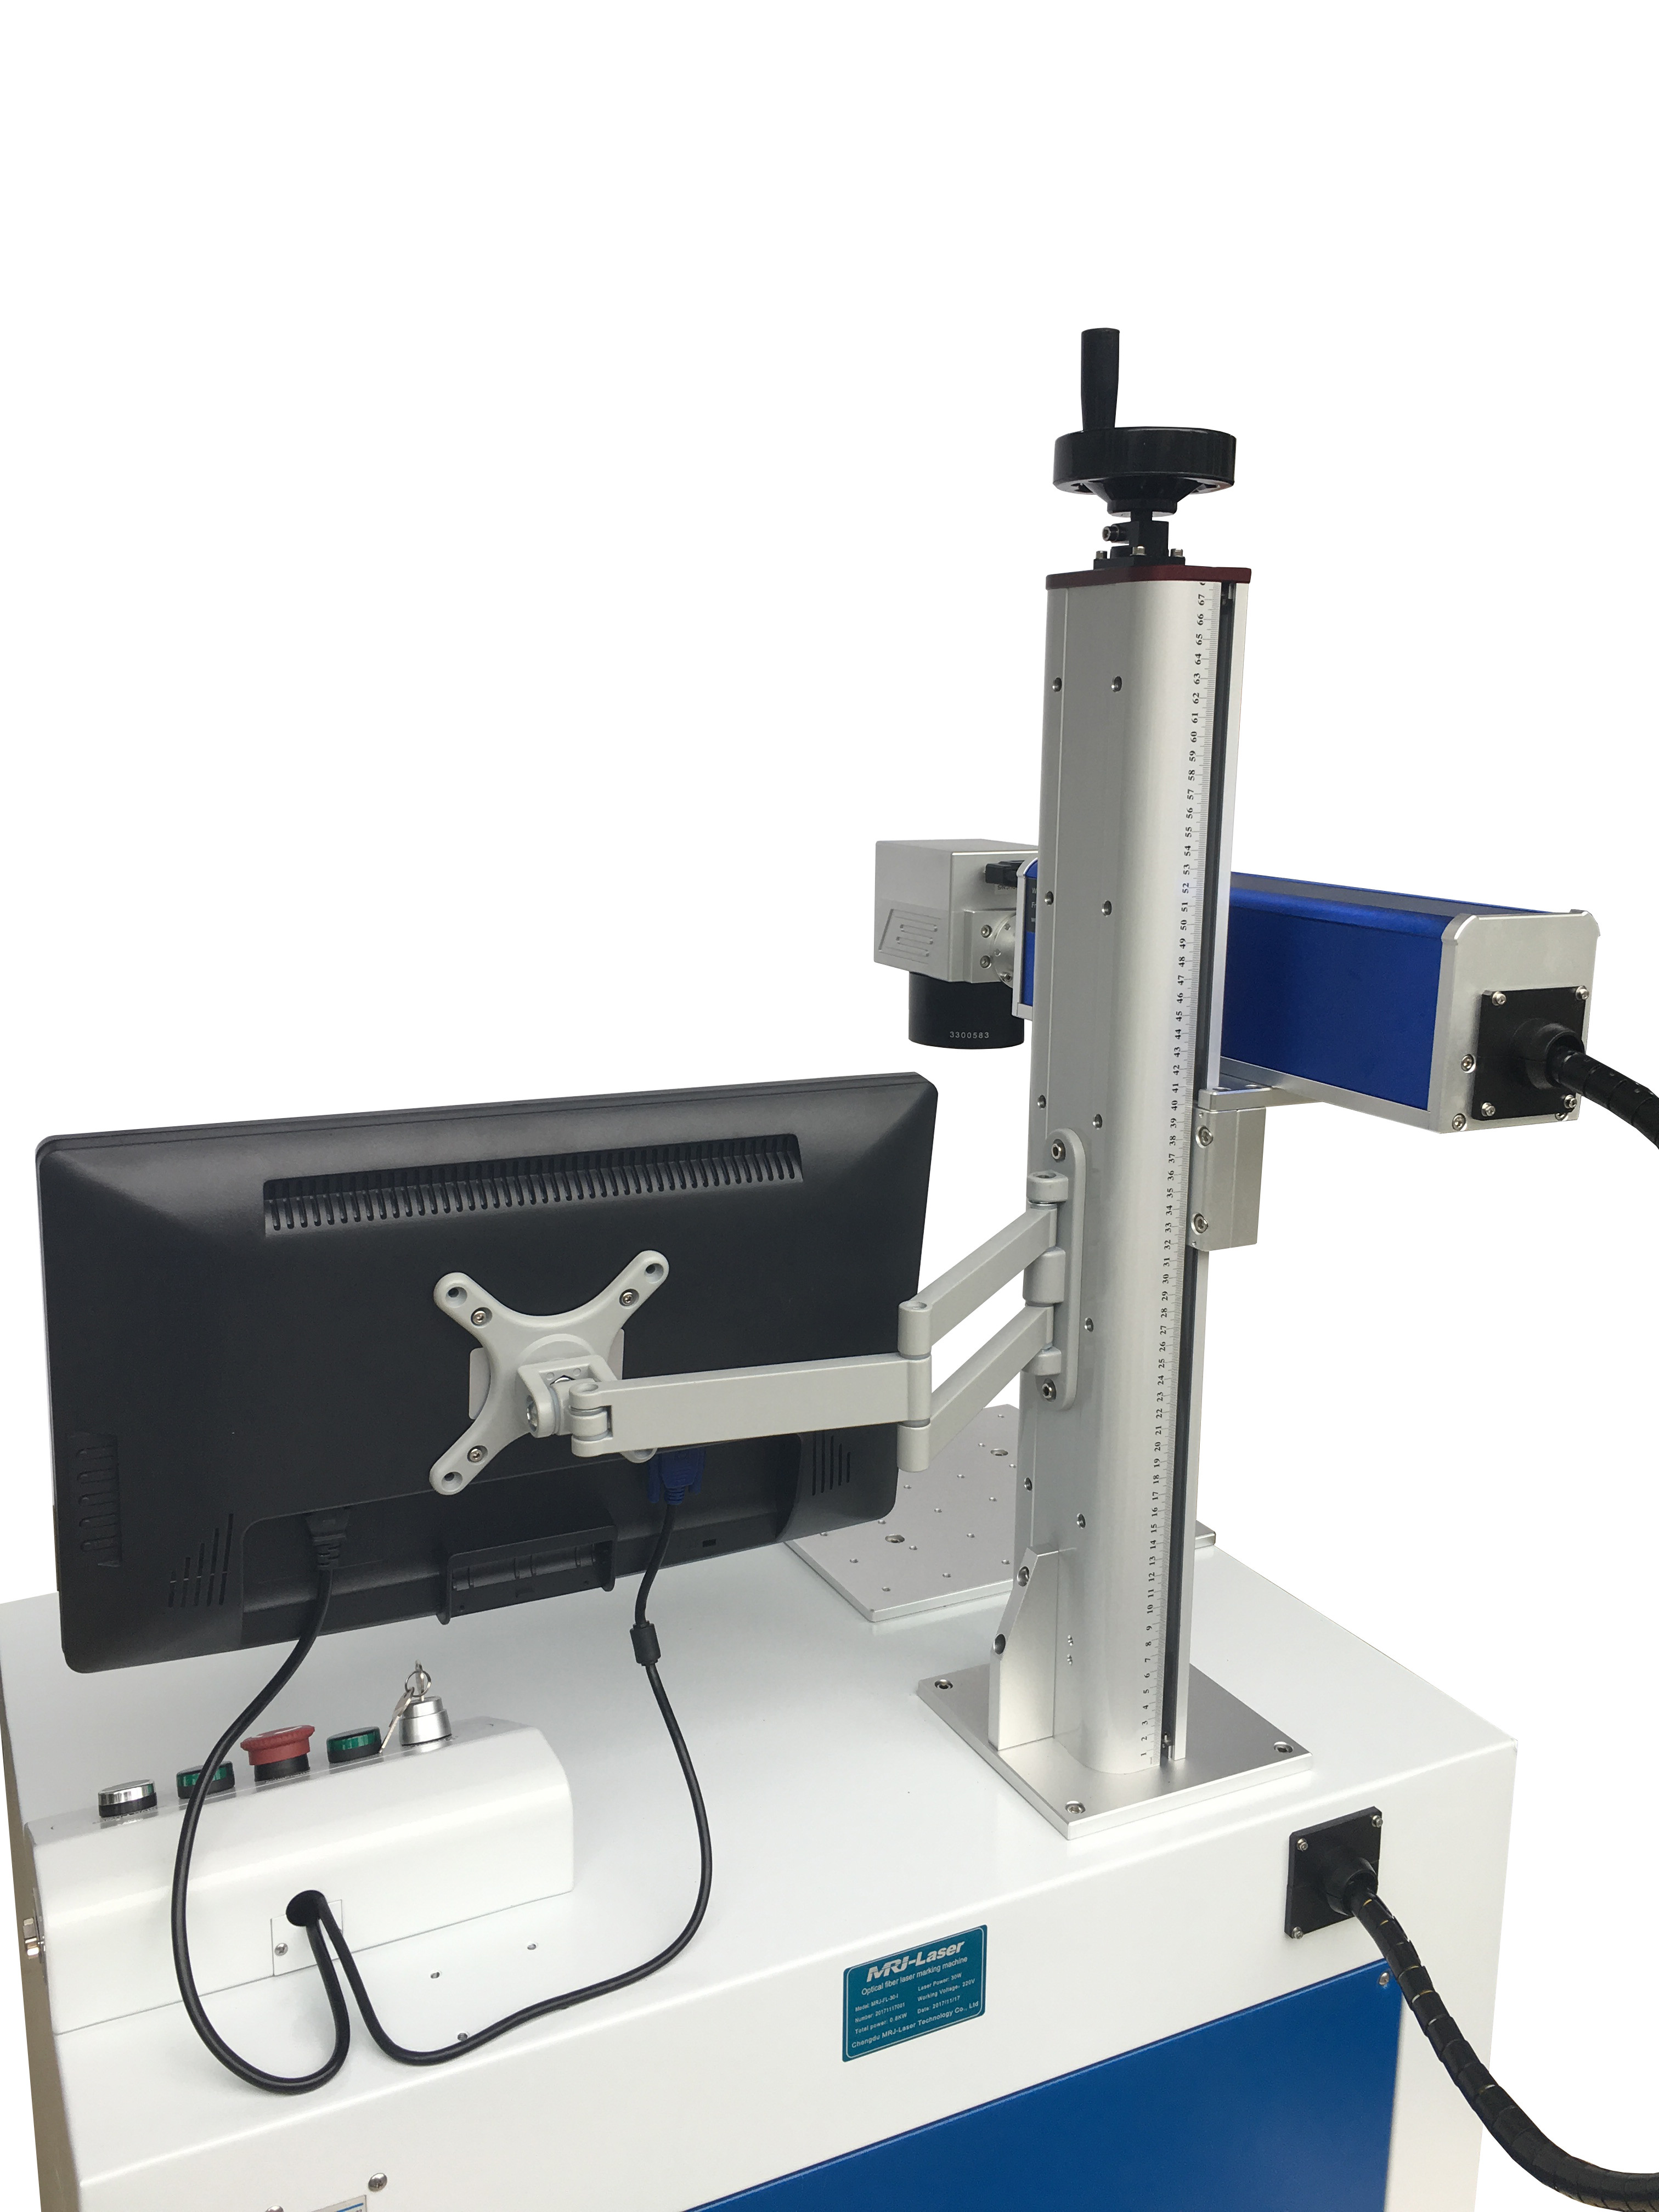  Industrial Laser Marking Equipment , 5W UV Fiber Laser Etching Machine Manufactures